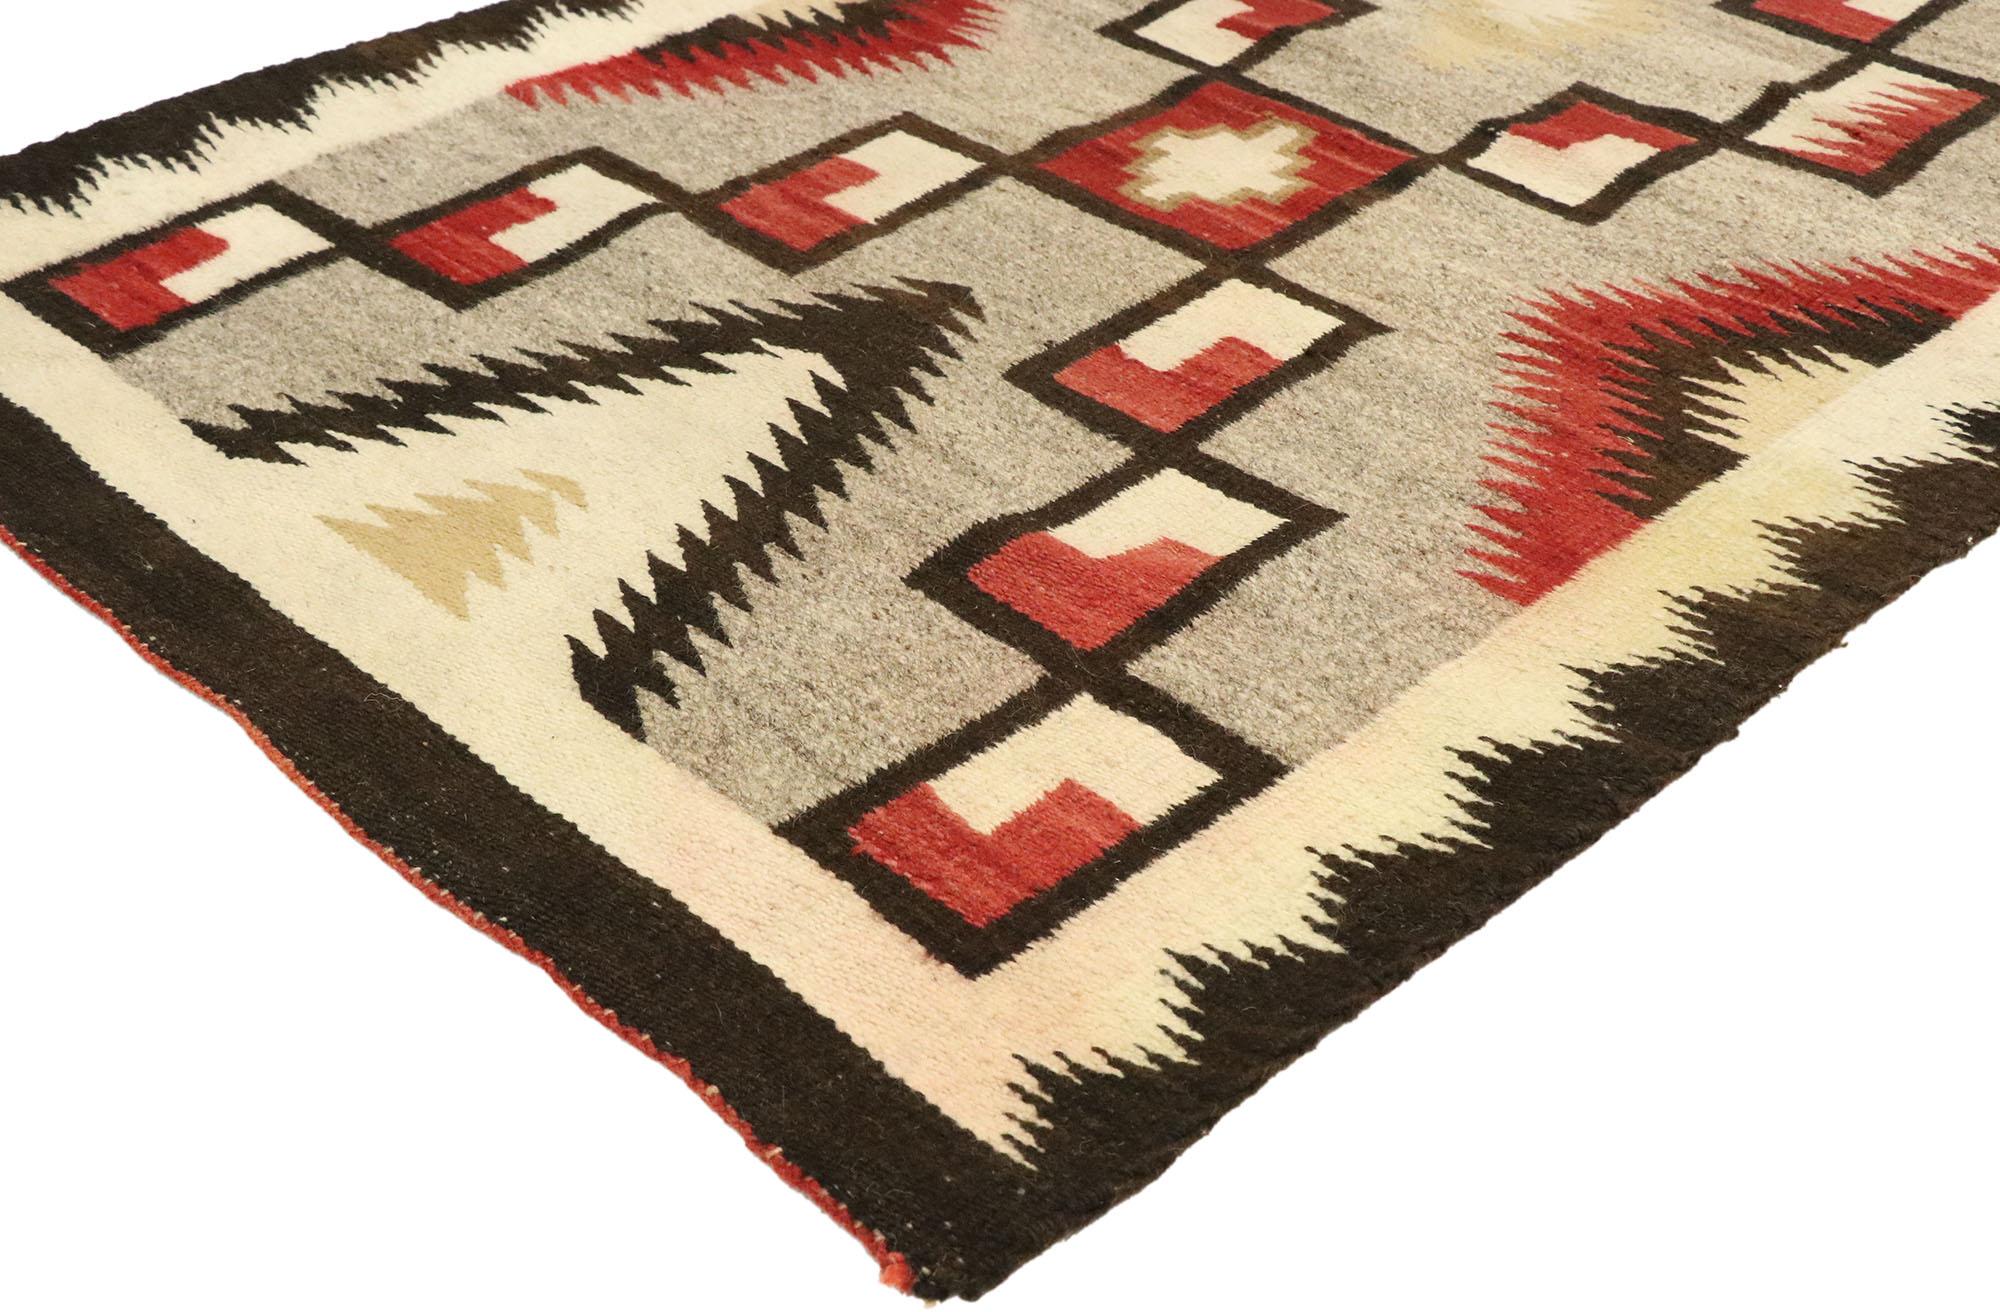 77527, Vintage Navajo Kilim Teppich mit Two Grey Hills Stil 03'00 x 05'11. Mit seinem kühnen, ausdrucksstarken Design, seinen unglaublichen Details und seiner Struktur ist dieser handgewebte Vintage-Navajo-Kilim-Teppich aus Wolle eine fesselnde